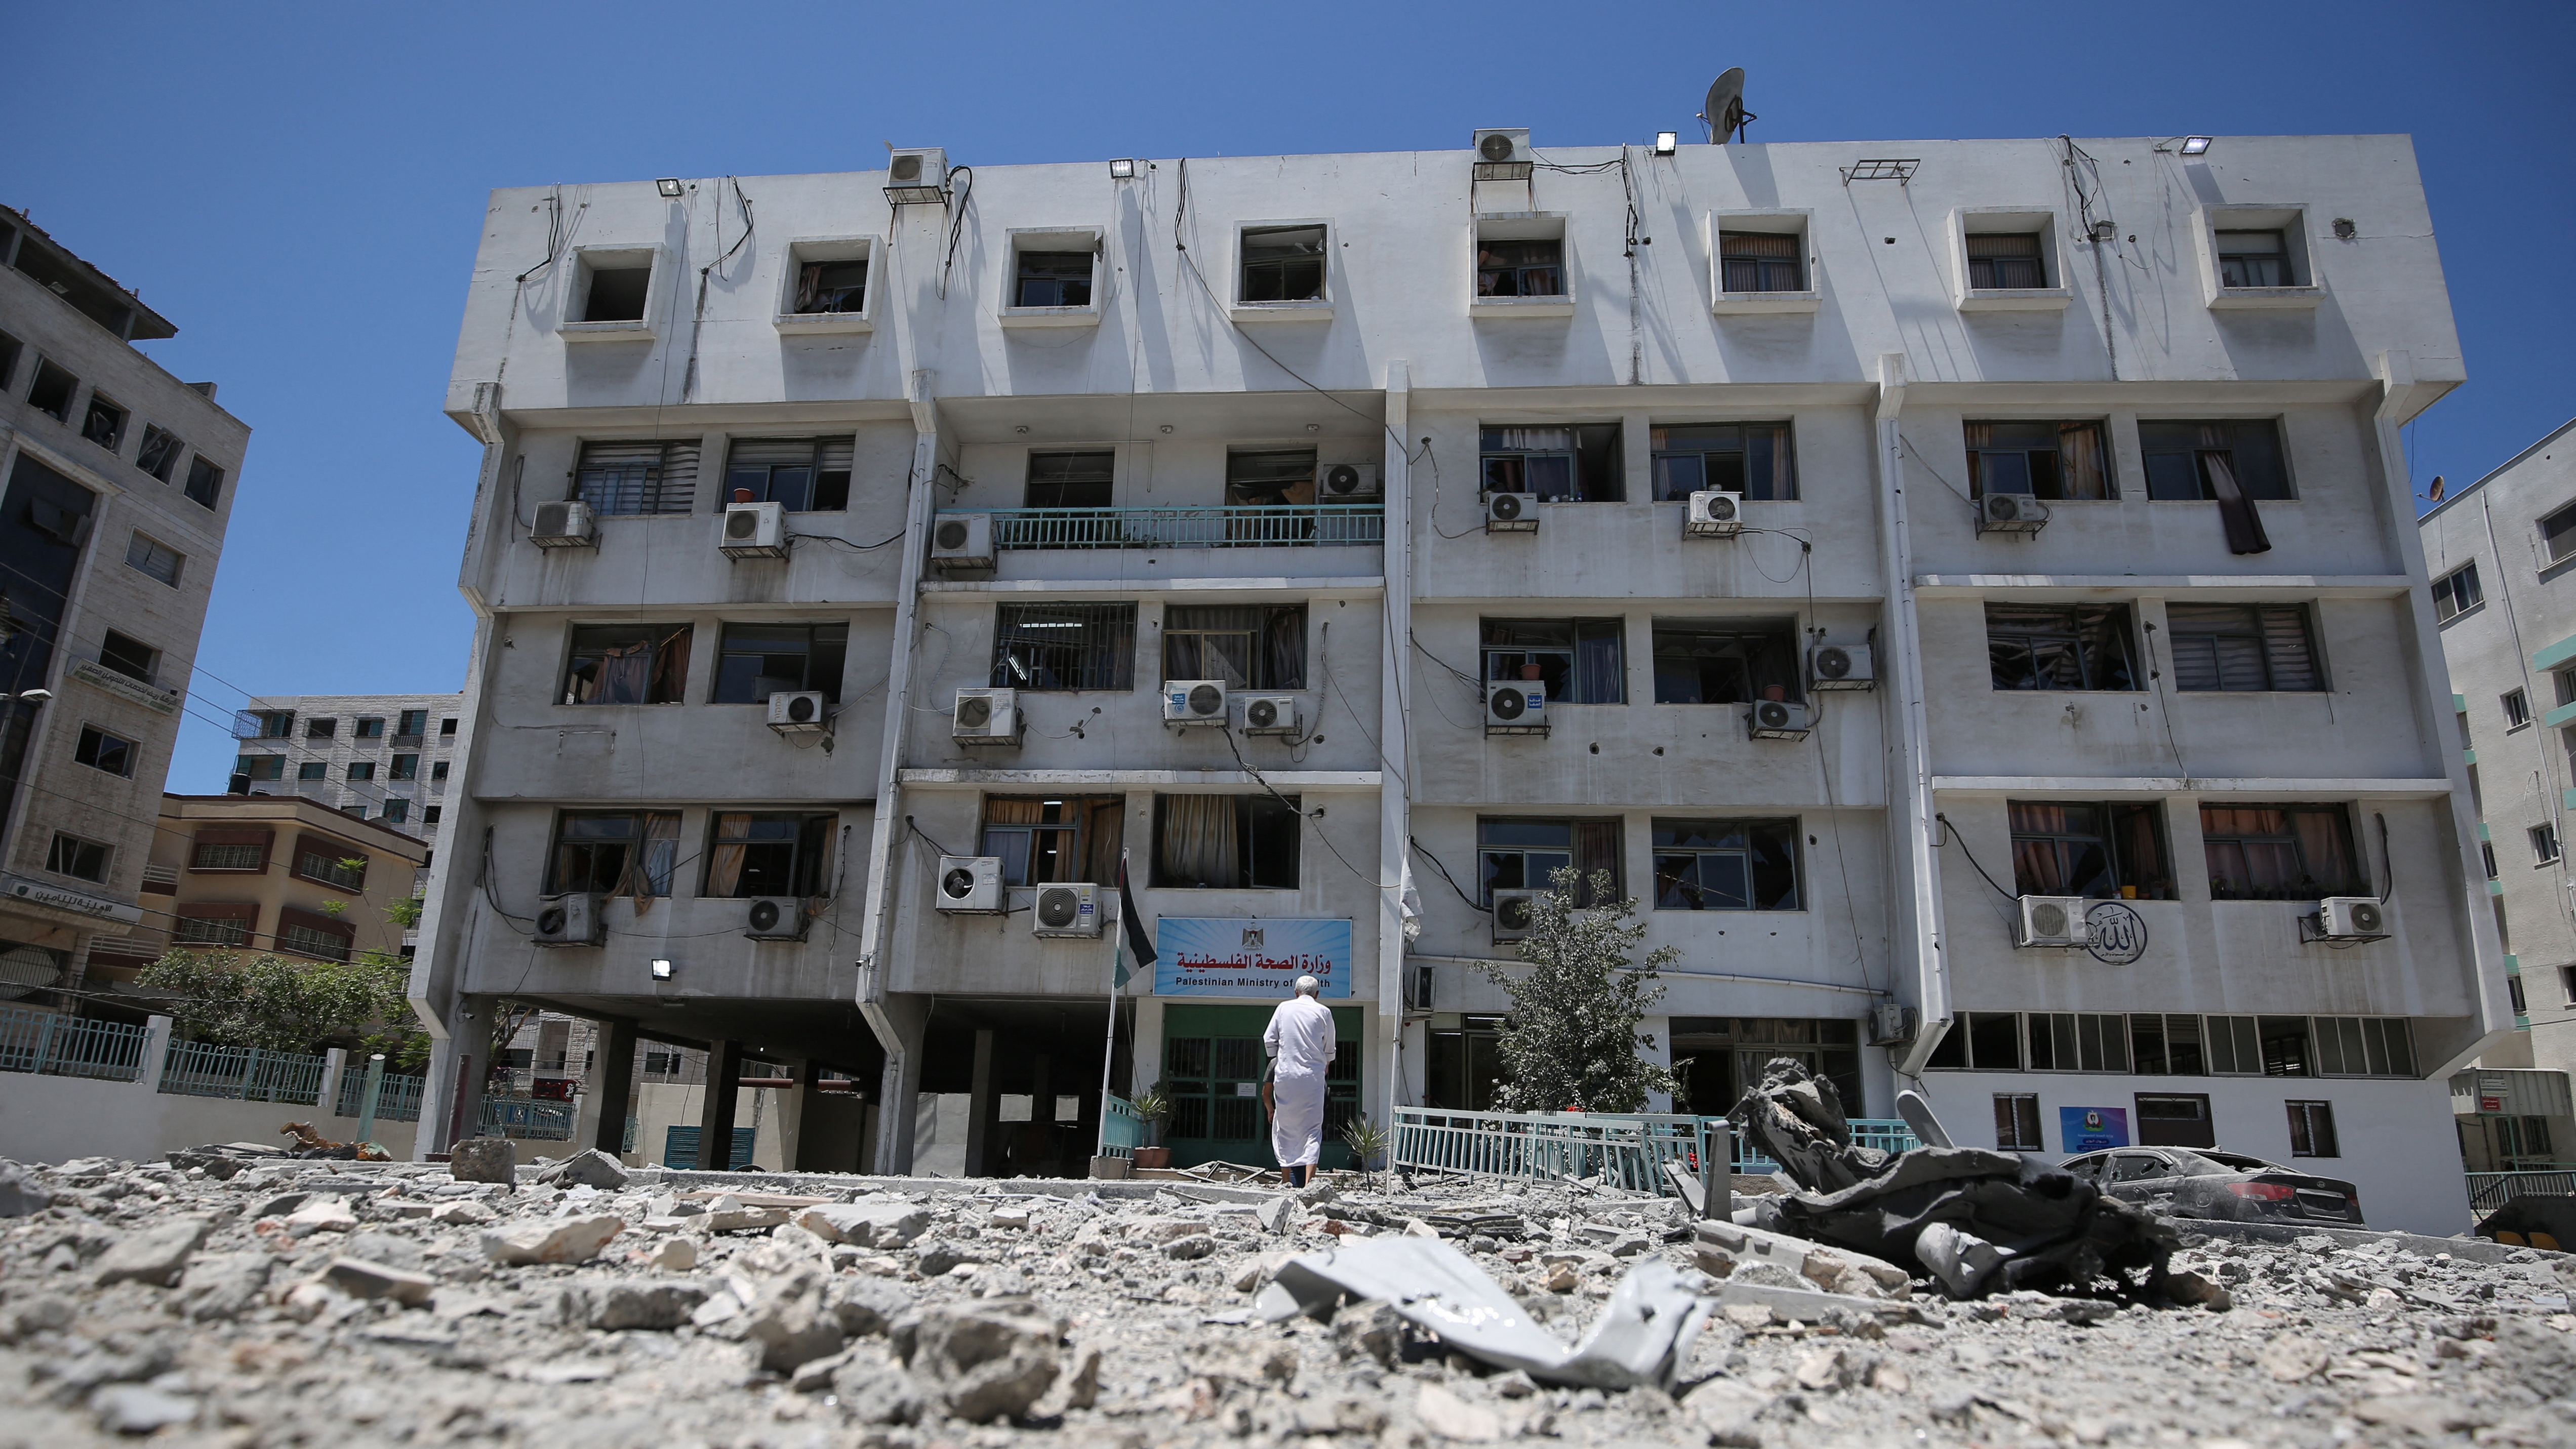 مبنى وزارة الصحة الفلسطينية في غزة الذي تضرر بشدة جراء القصف الإسرائيلي على مدينة غزة في وقت سابق من هذا الأسبوع